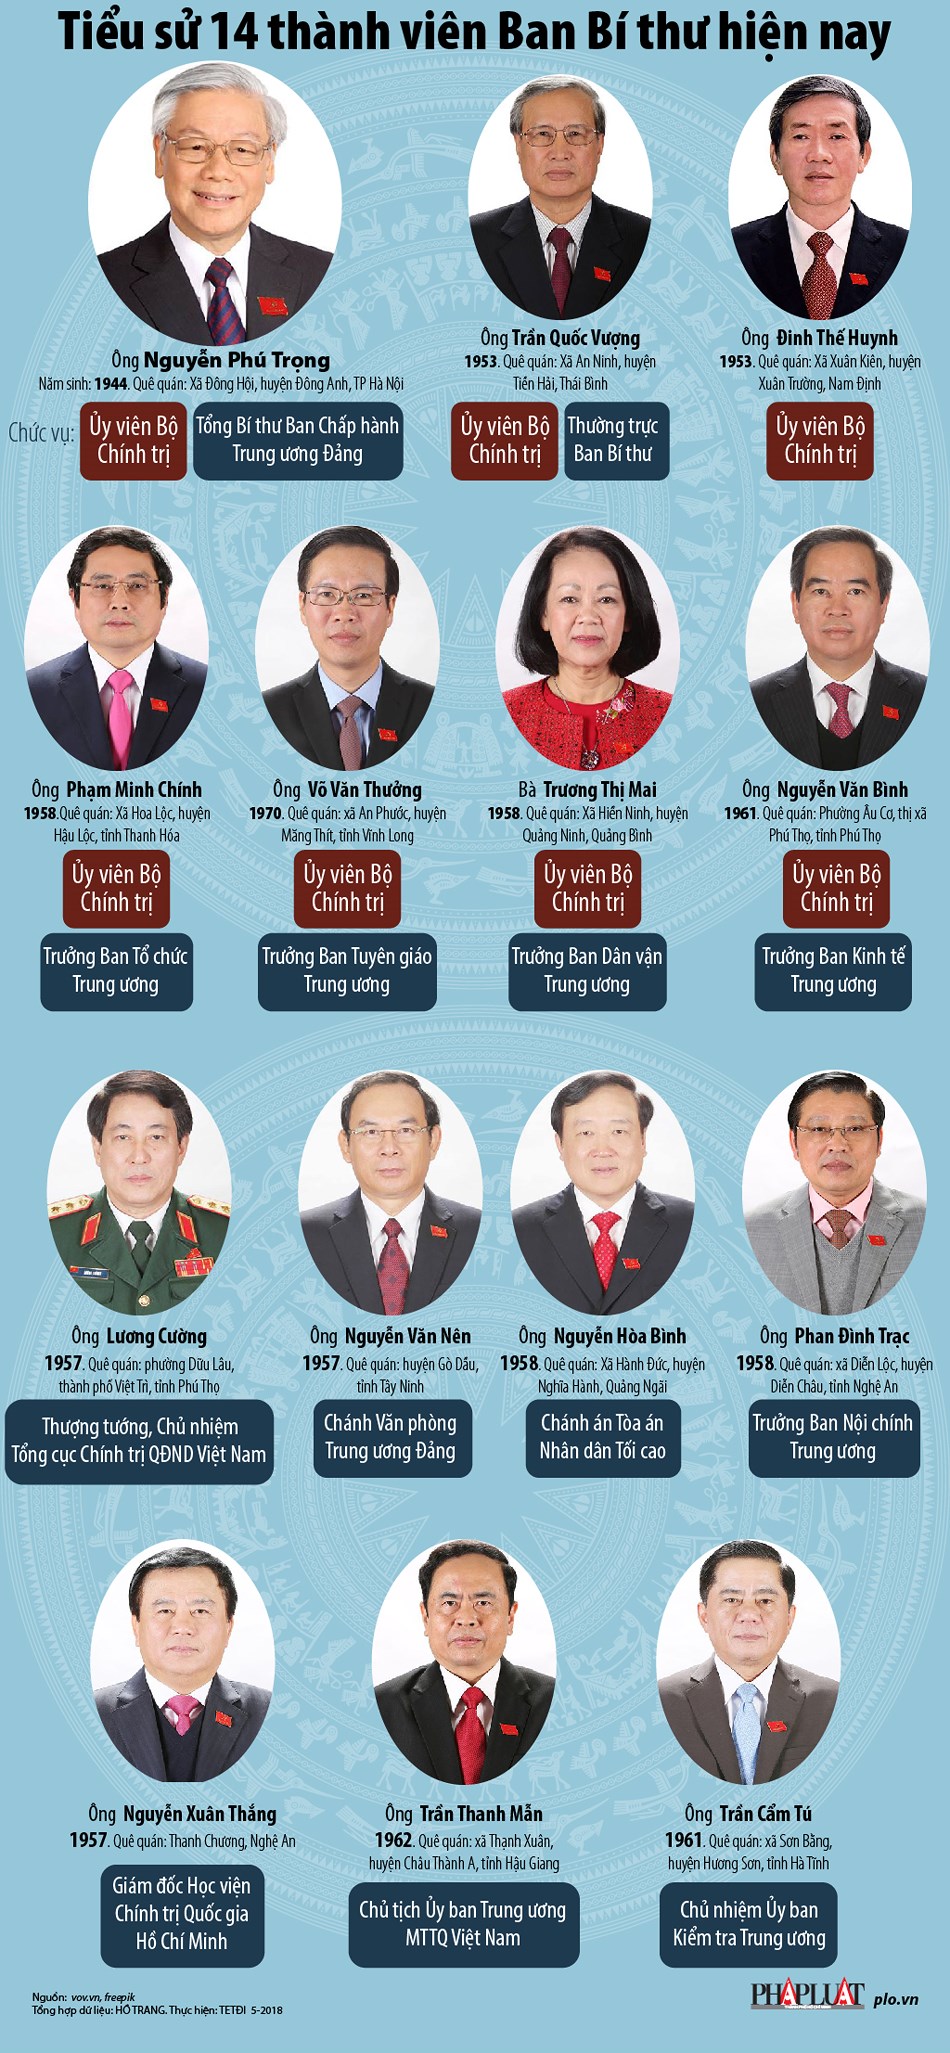 Infographic: Chân dung 14 thành viên Ban Bí thư hiện nay - 1